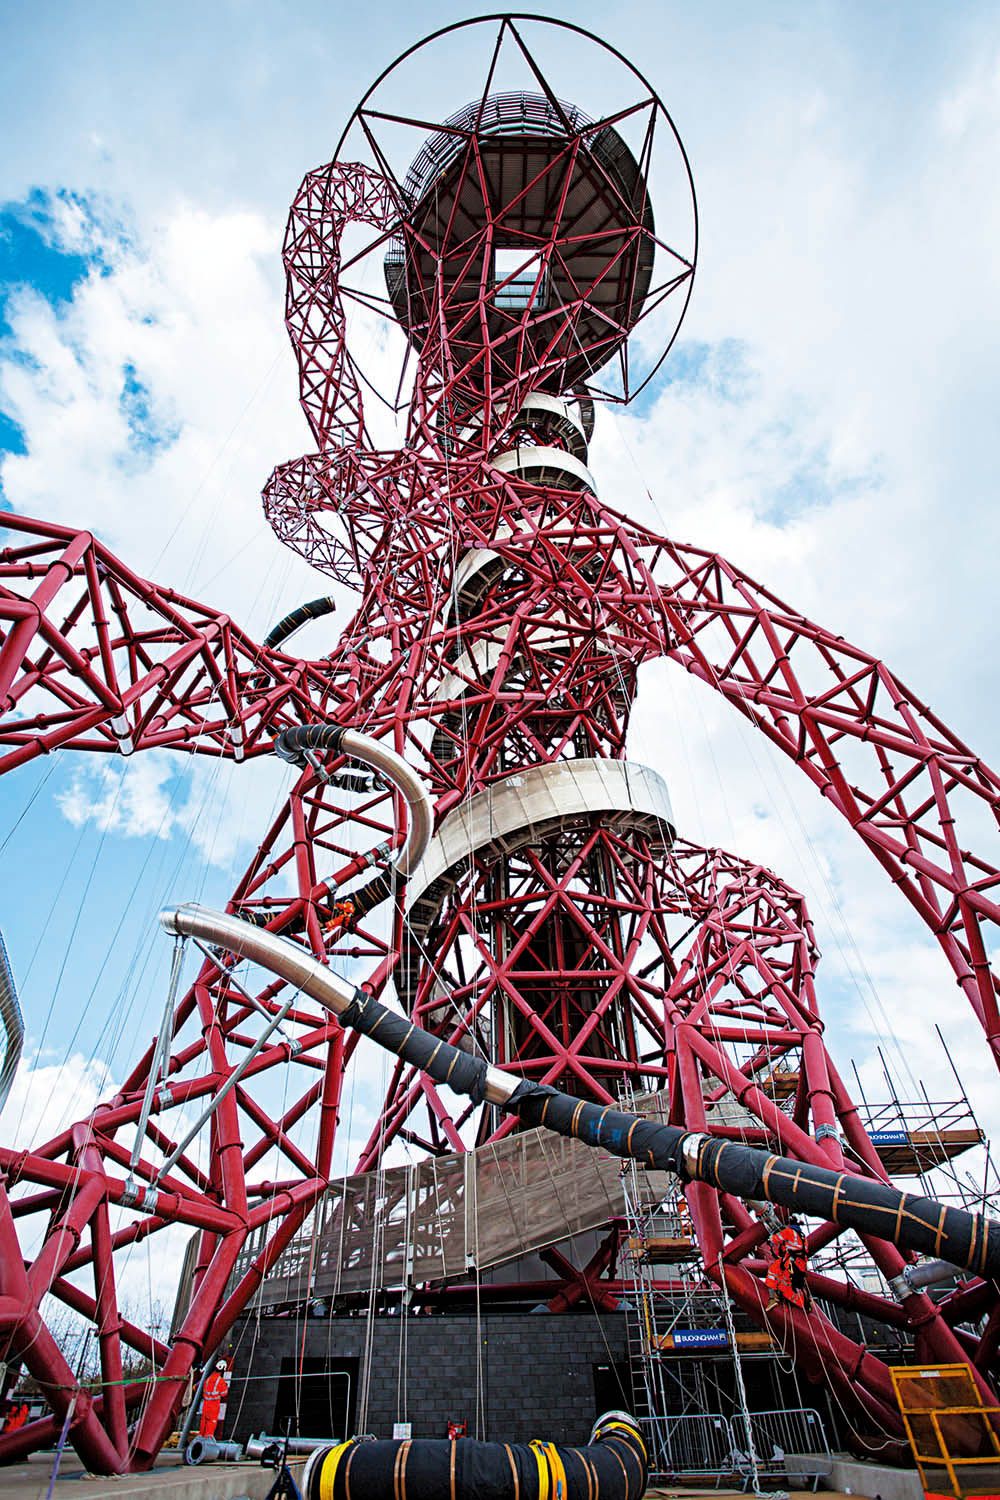 以英国为例,重要地标 伦敦奥运了望塔 arcelormittal orbit,光是去年